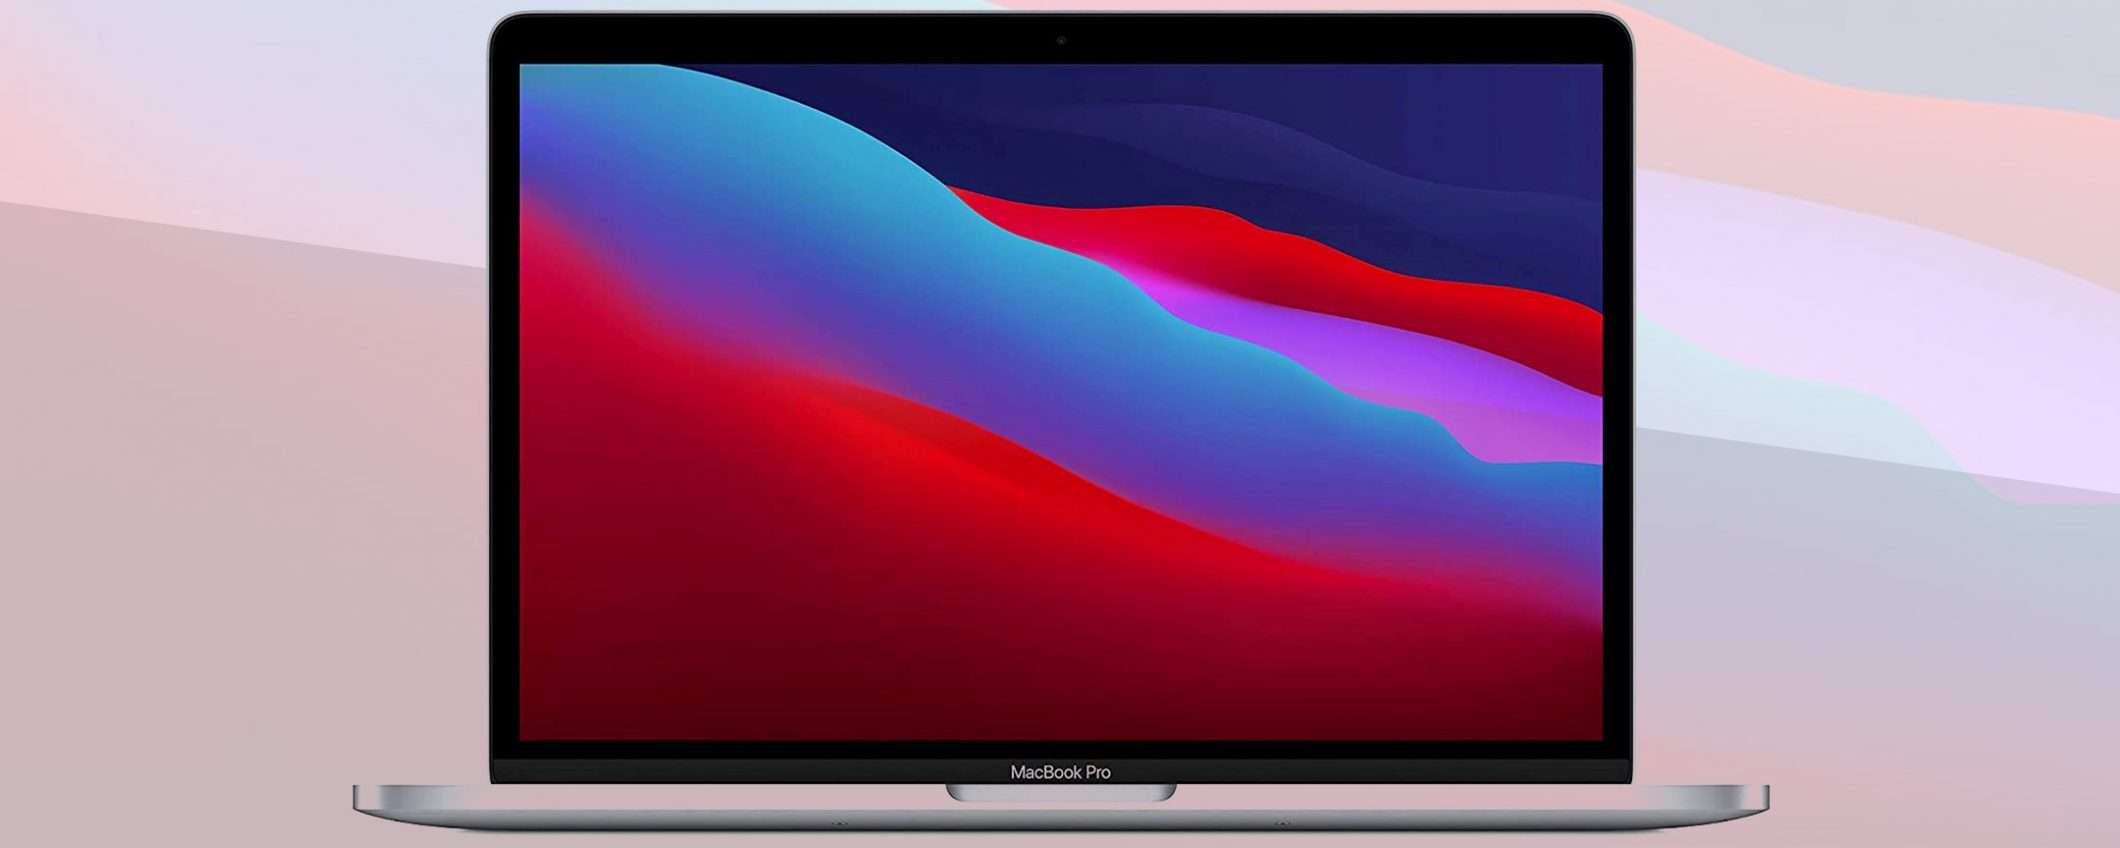 MacBook Pro 13 M1, prezzo minimo: sconto 100 euro